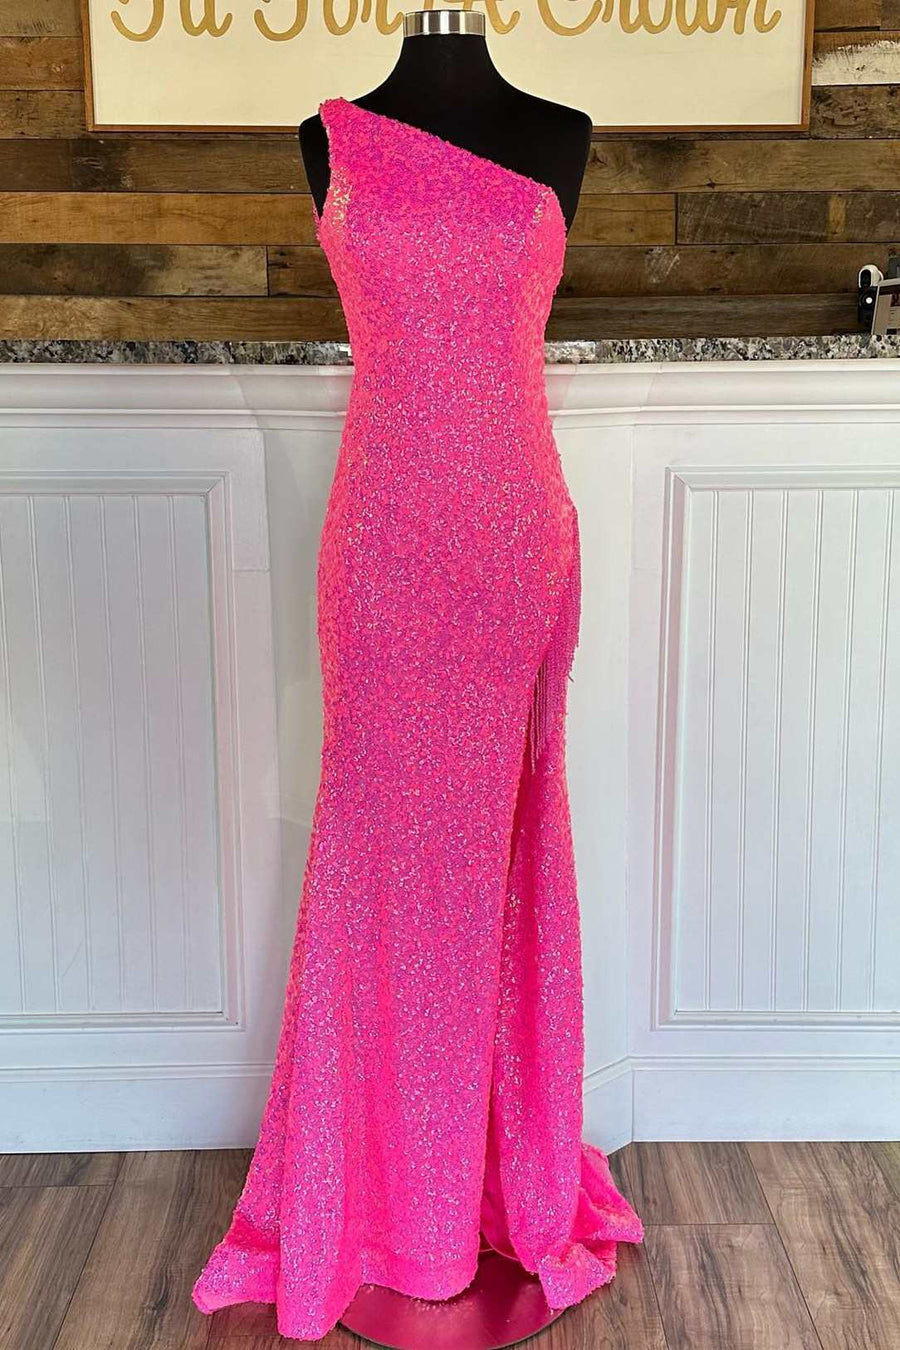 Hot Pink One-Shoulder Long Sequin Prom Dress Hot Pink / 0